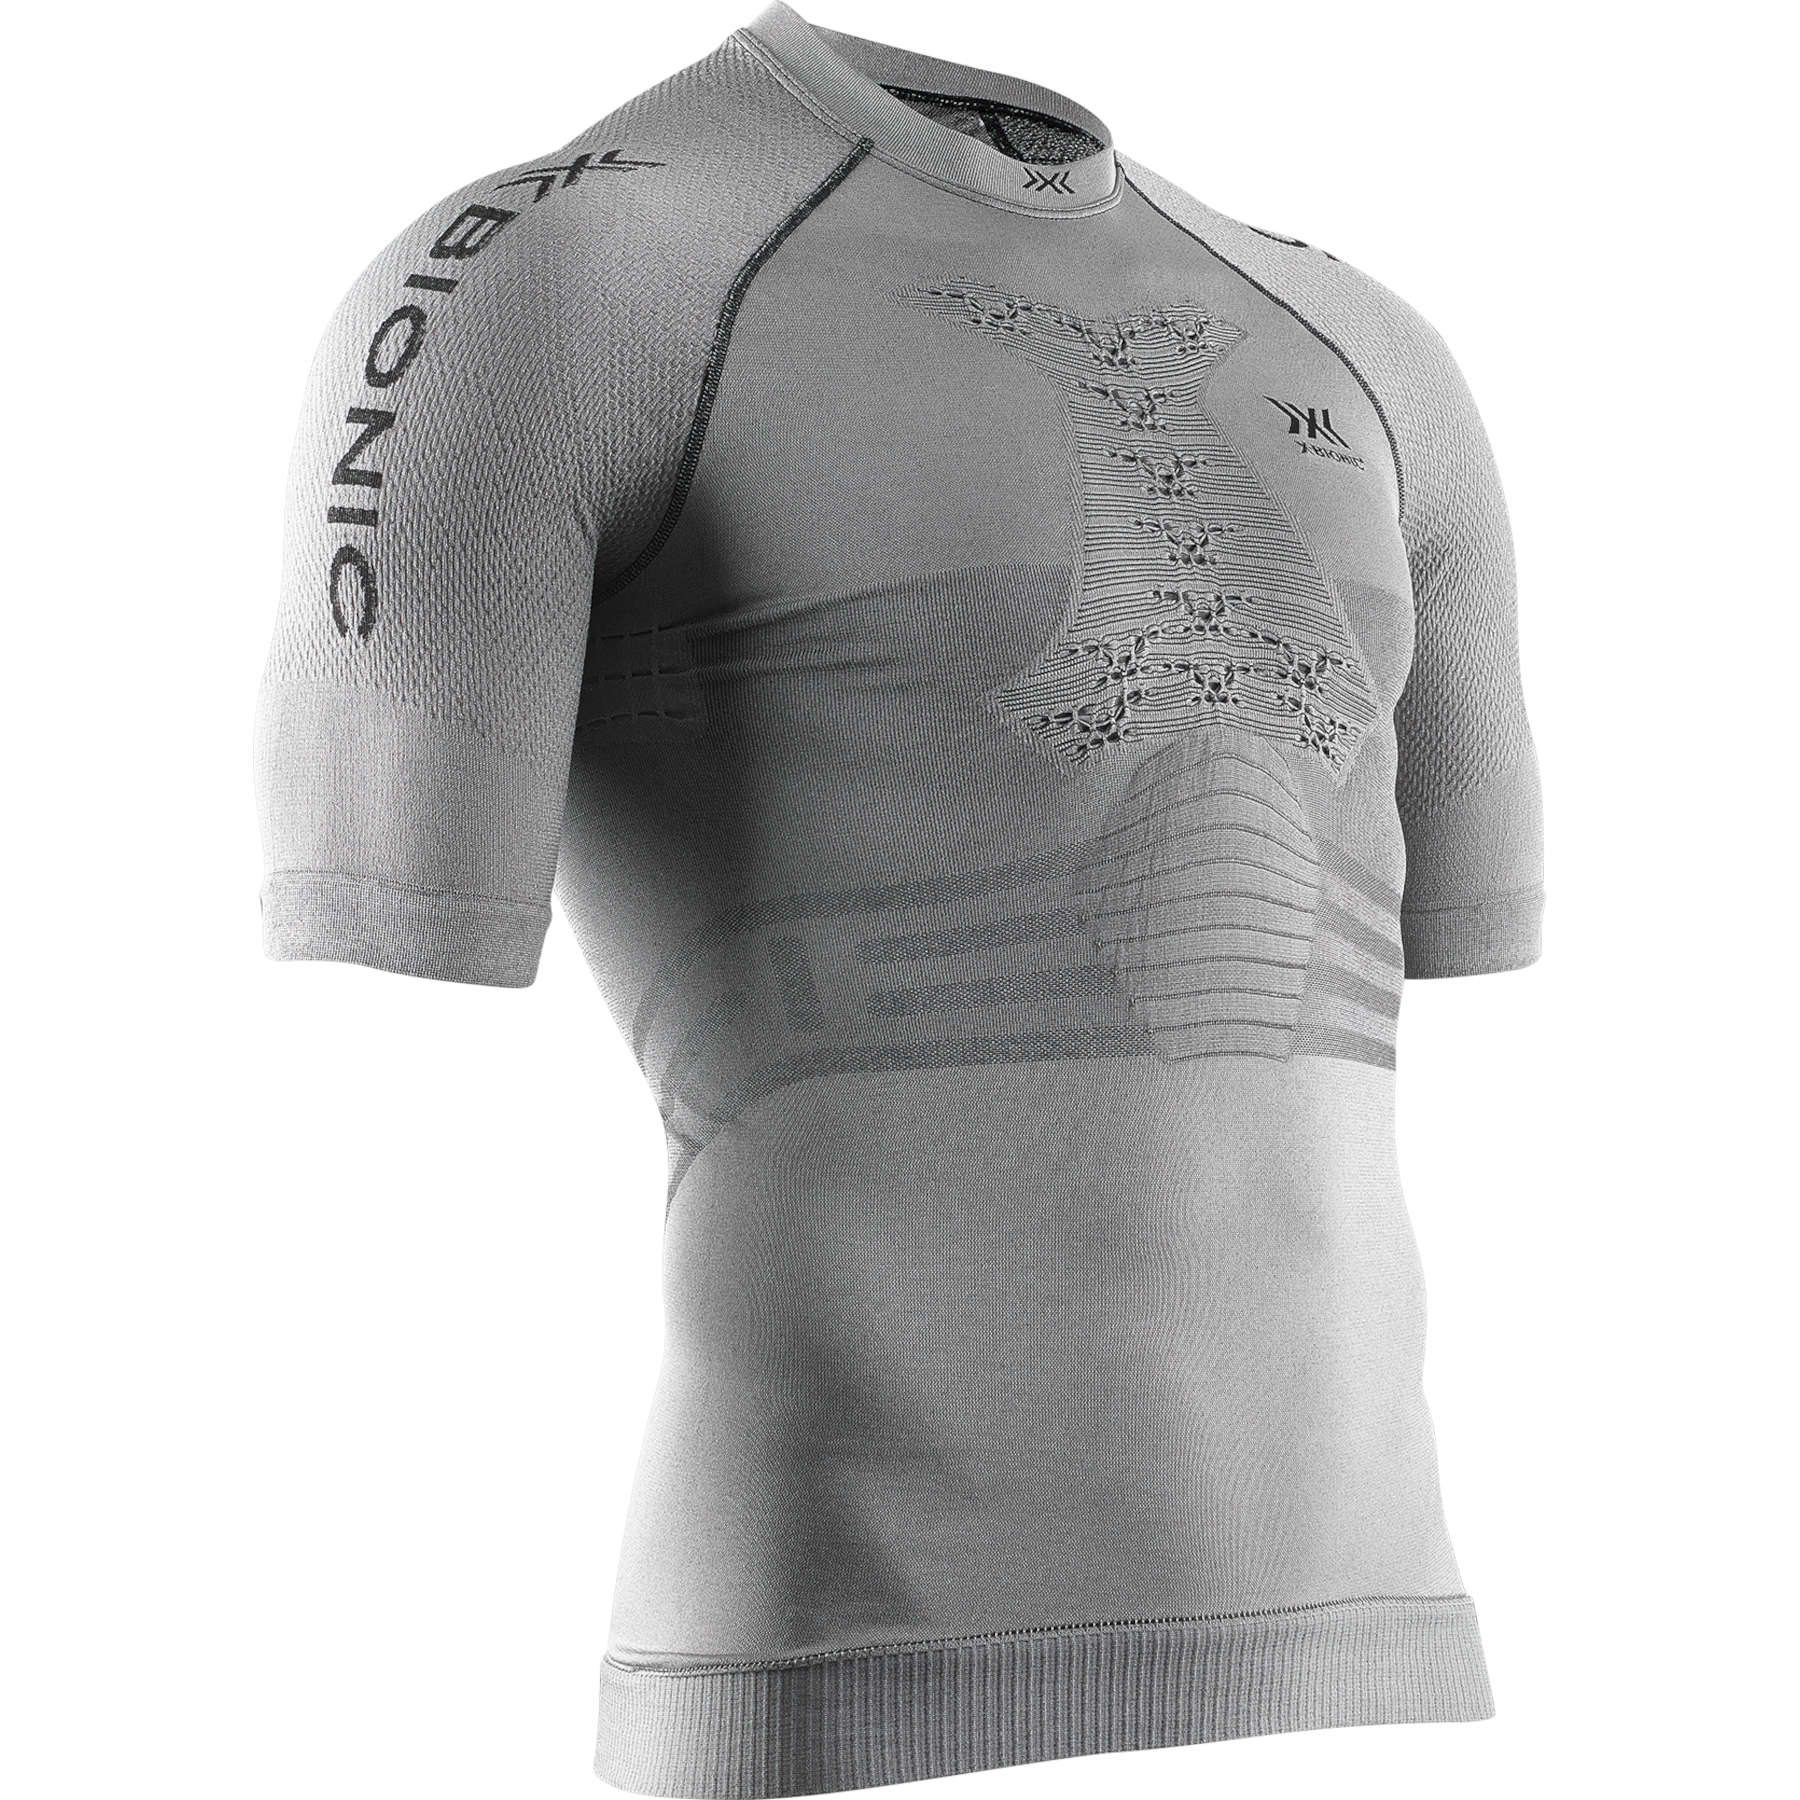 Produktbild von X-Bionic Fennec 4.0 Run Kurzarmshirt für Herren - anthracite/silver